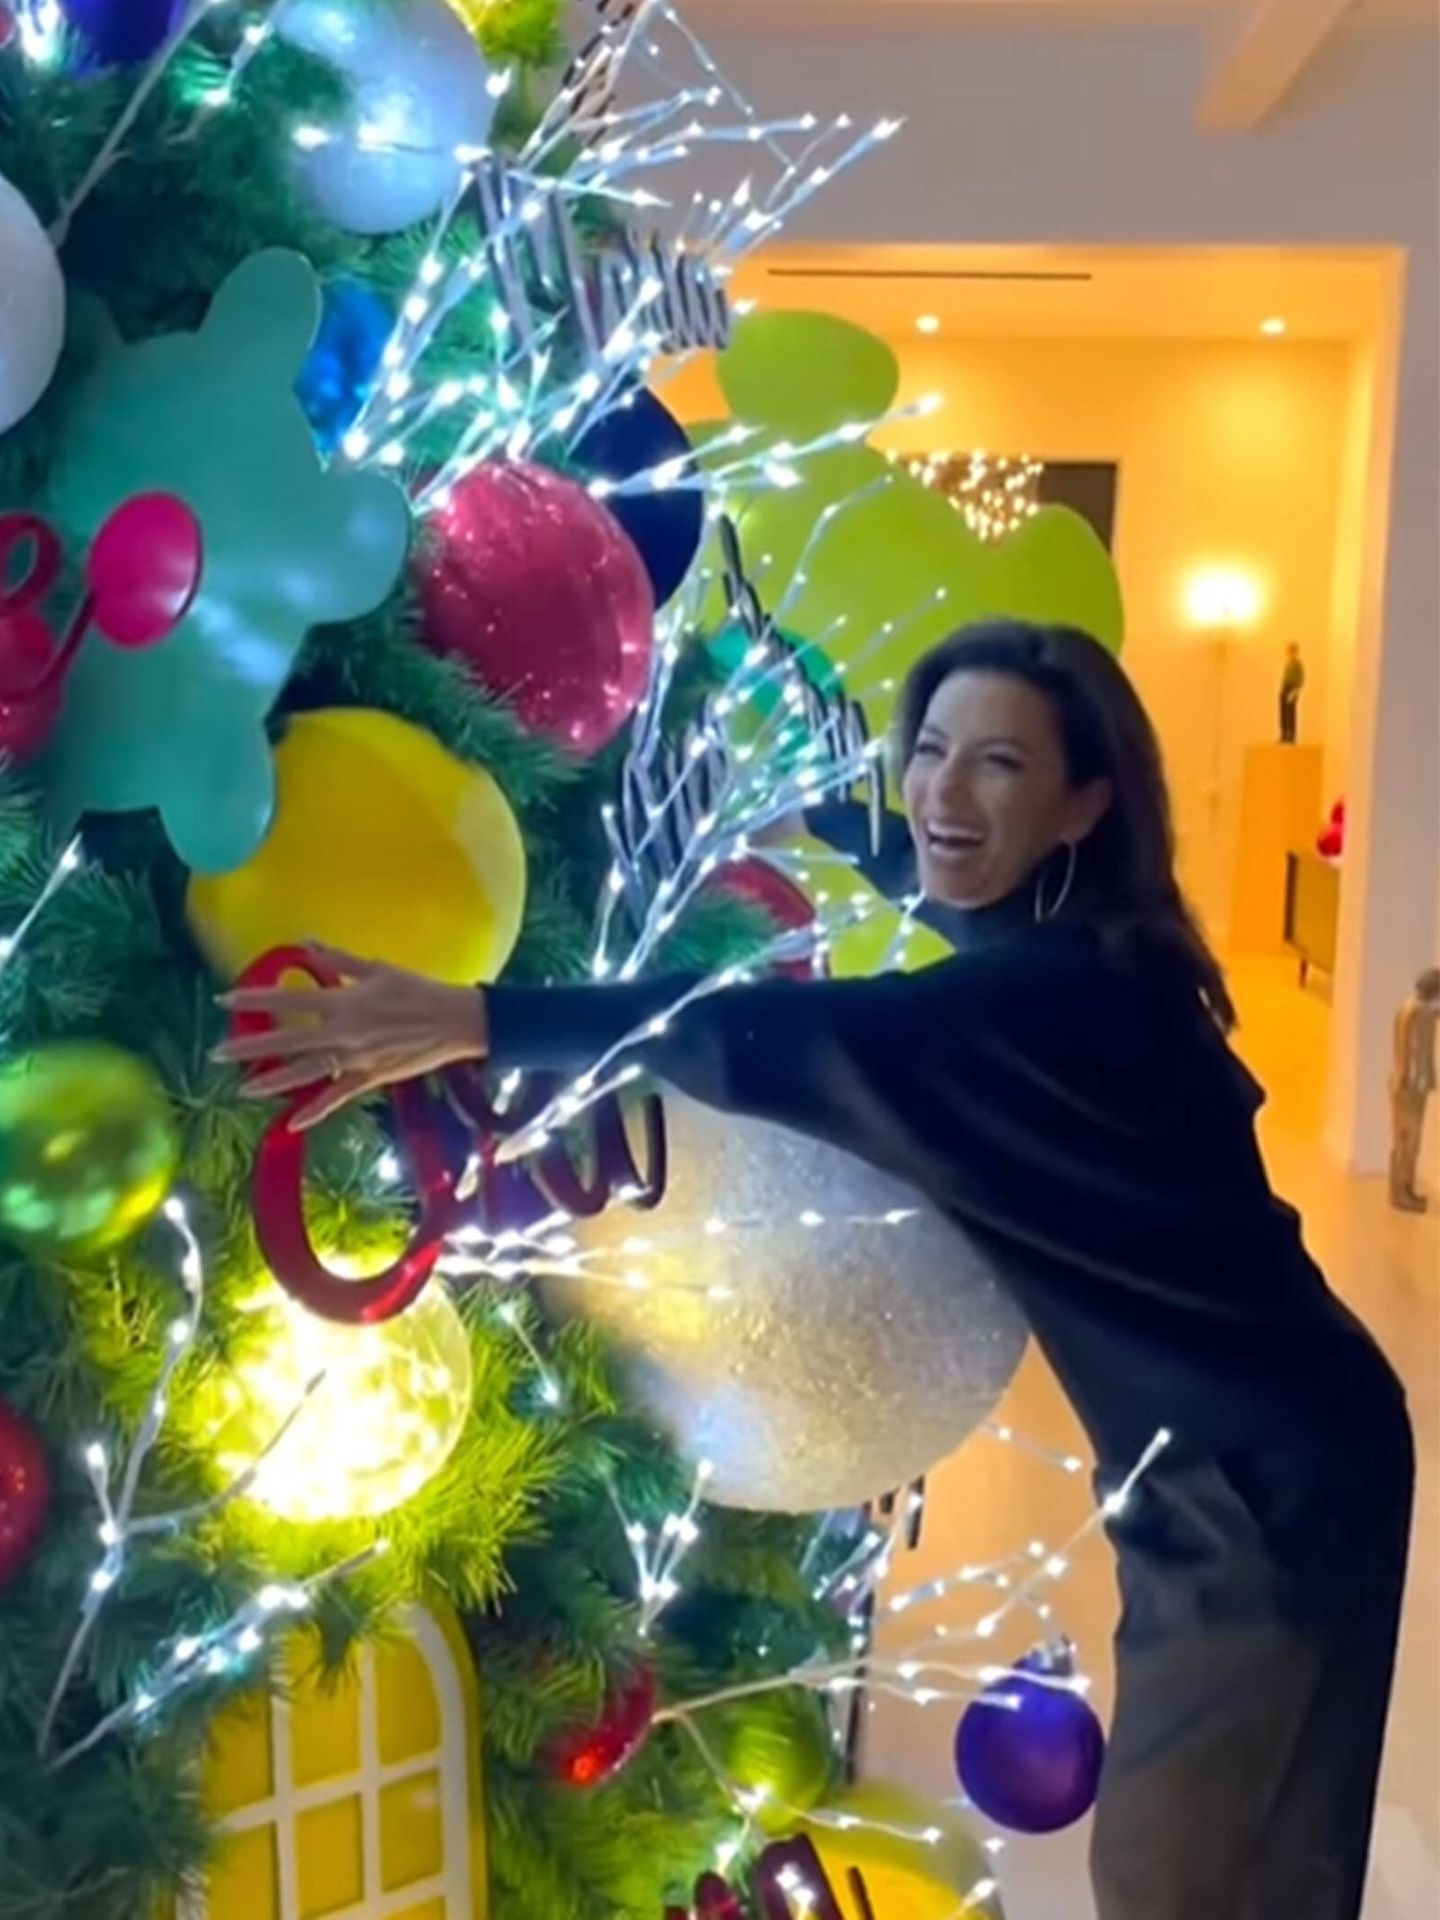 La decoración del árbol de Navidad de Eva Longoria. (Instagram @evalongoria)